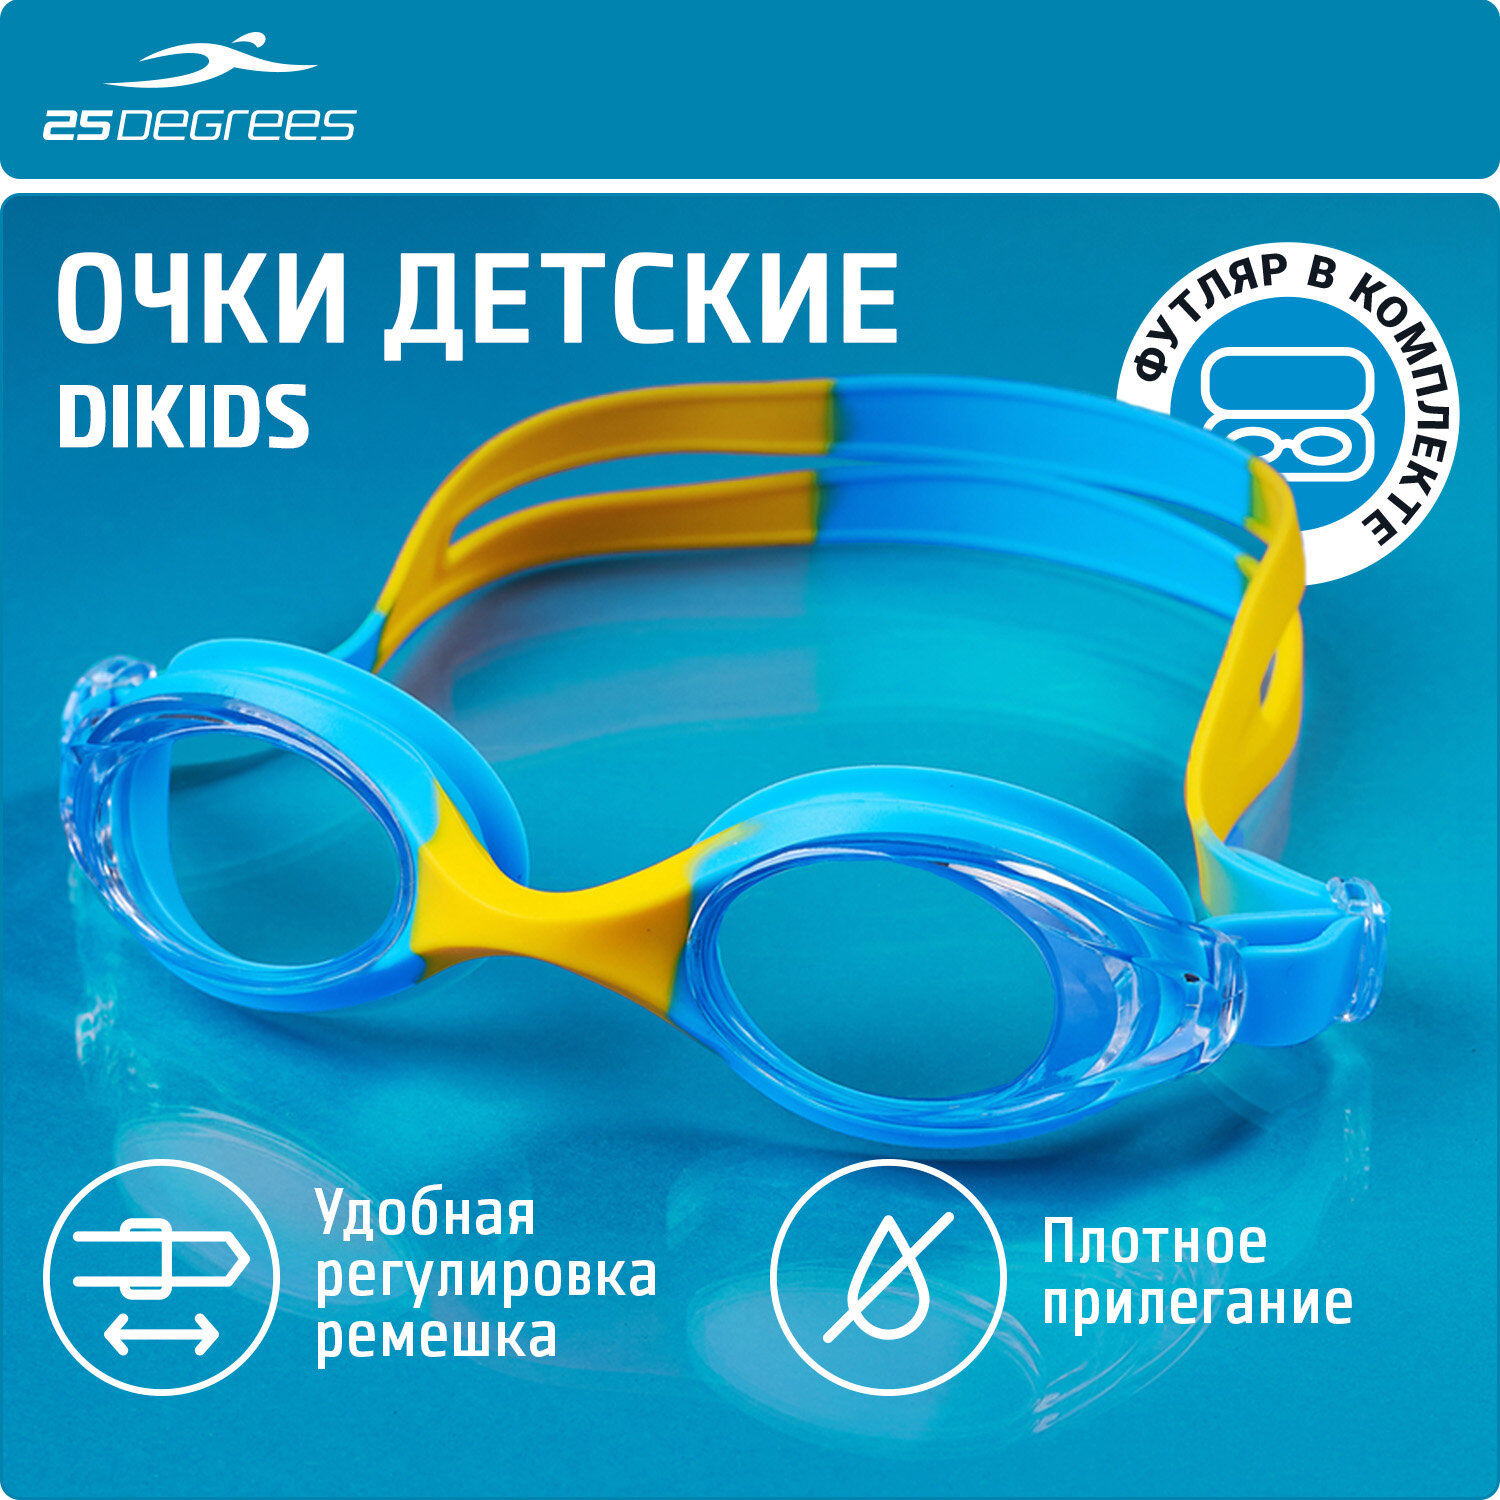 Очки для плавания 25DEGREES Dikids синие детские